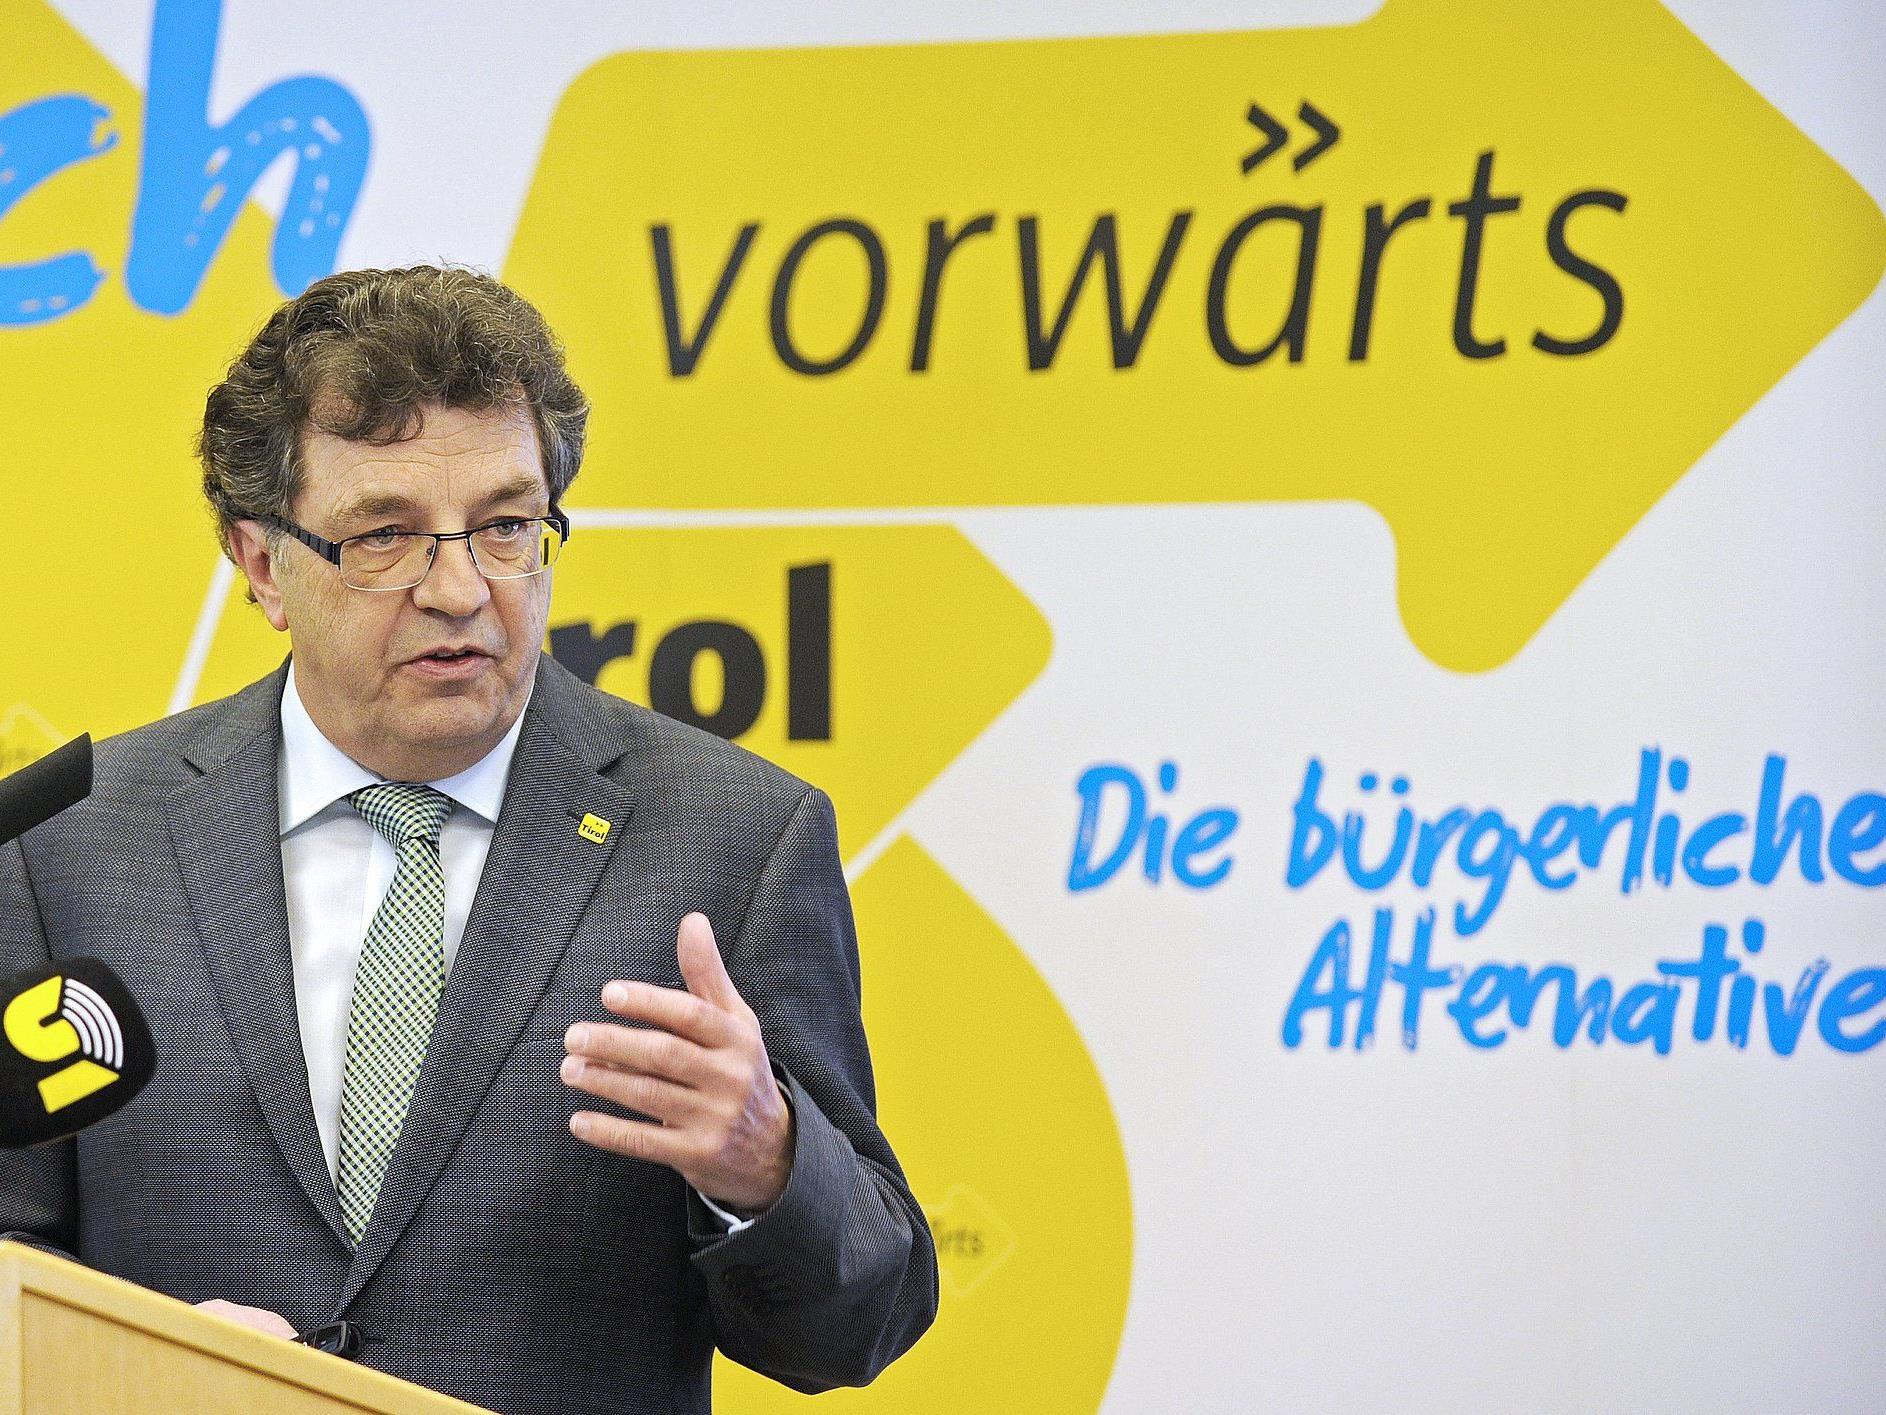 Bei "Vorwärts Tirol" steht Korruption im Raum.